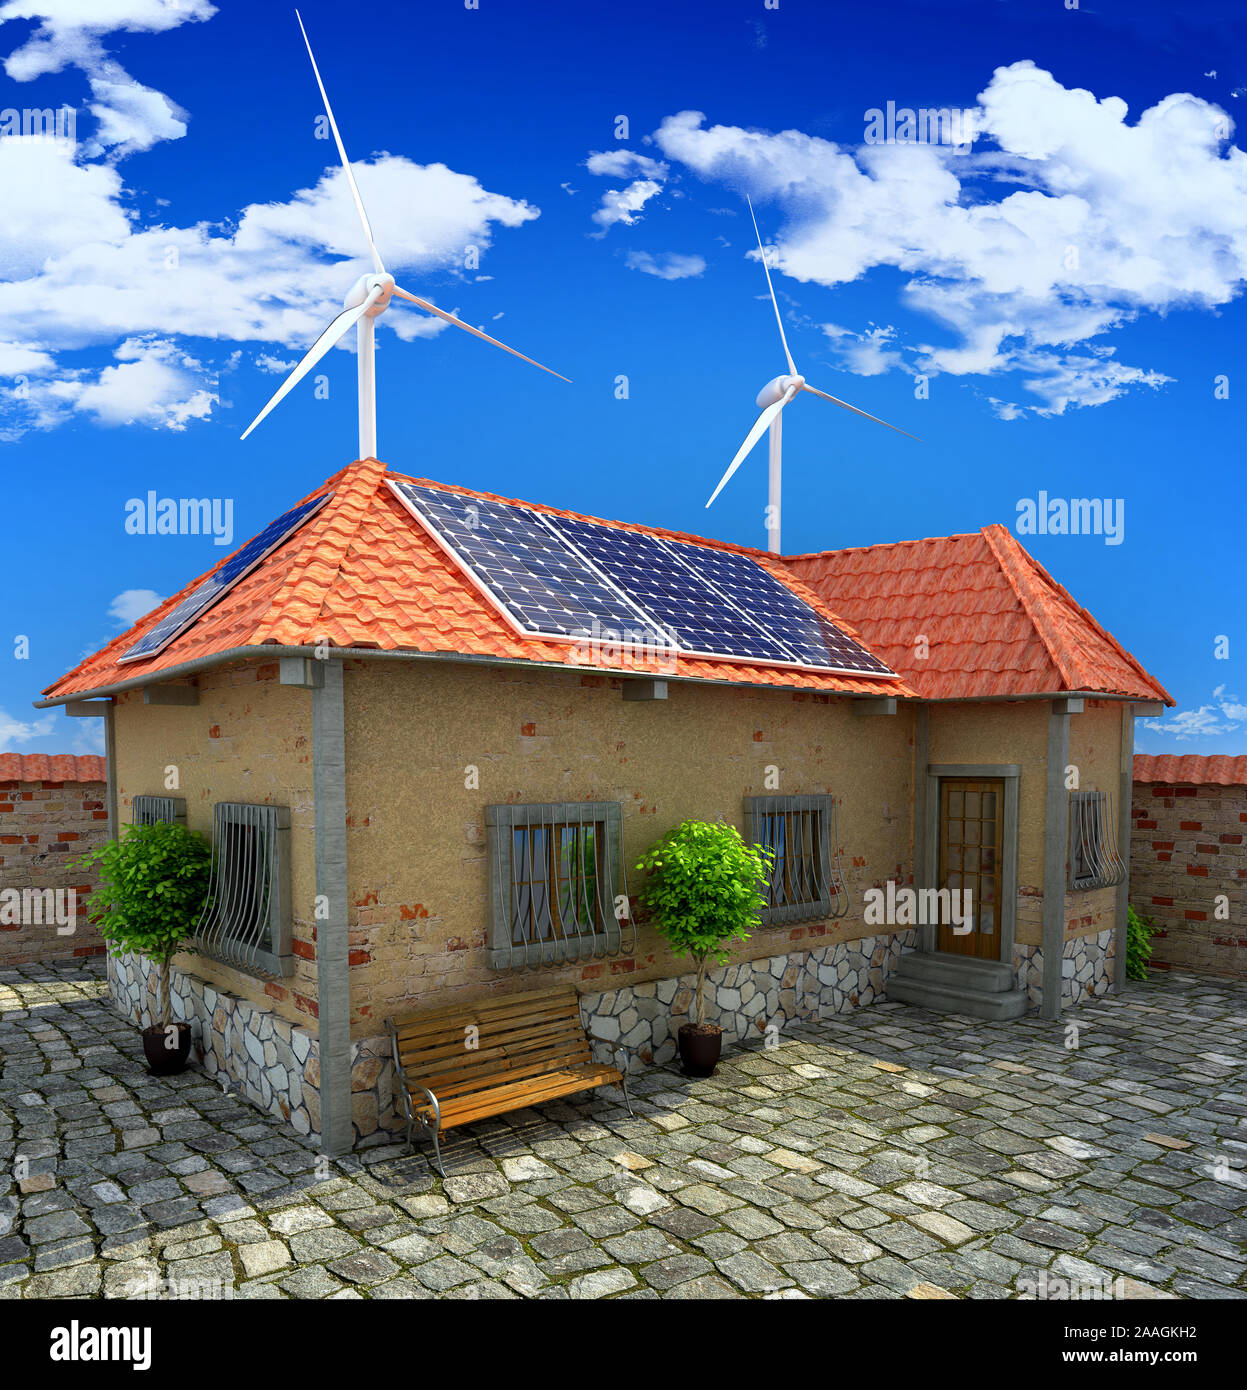 Home energia solare - Energie rinnovabili concetto - impianto solare per la casa - 3D render Foto Stock